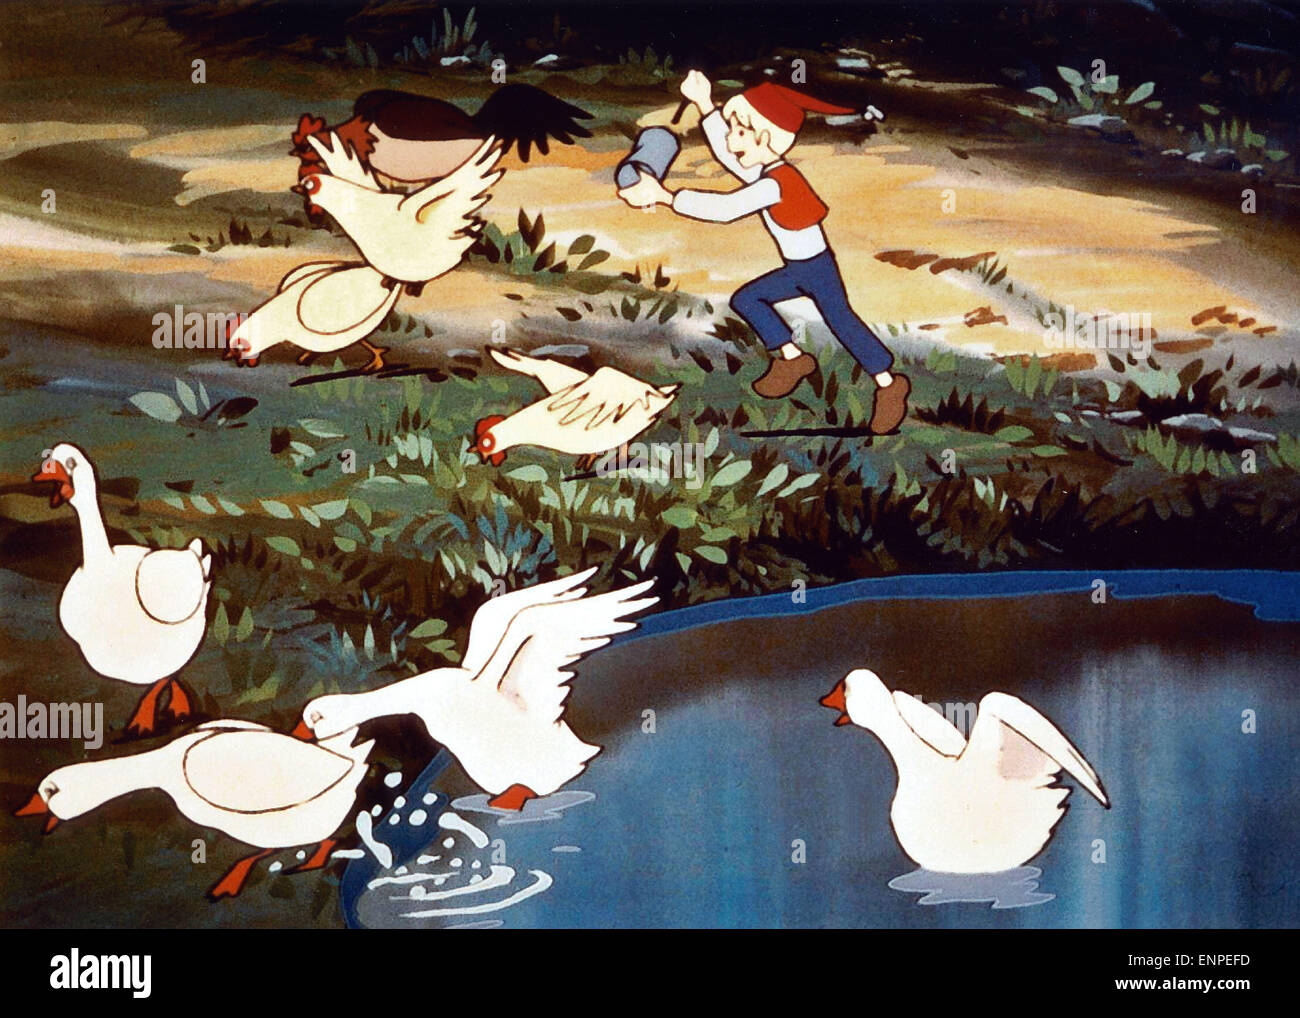 Nirusu no fushigi na tabi, aka: Wunderbare Reise des kleinen Nils Holgersson mit den Wildgänsen, Zeichentrickserie, Japan 1980 - Stock Photo